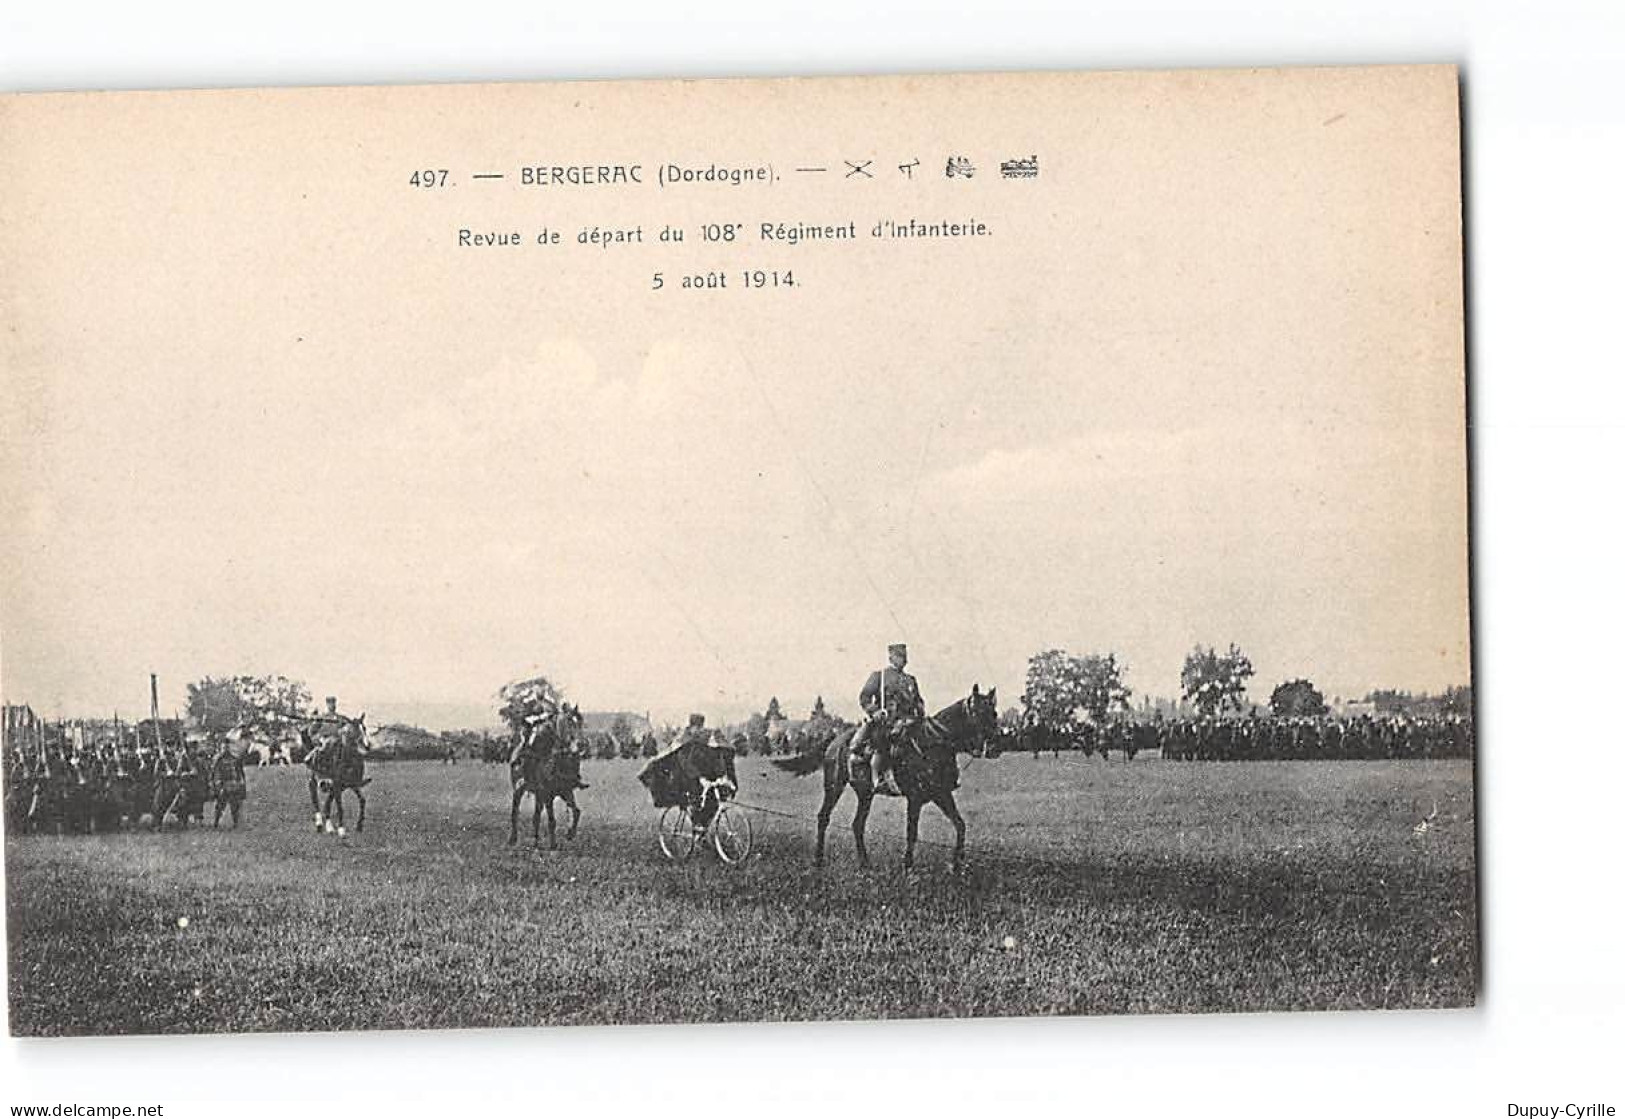 BERGERAC - Revue De Départ Du 108e Régiment D'Infanterie - 5 Août 1914 - Très Bon état - Bergerac